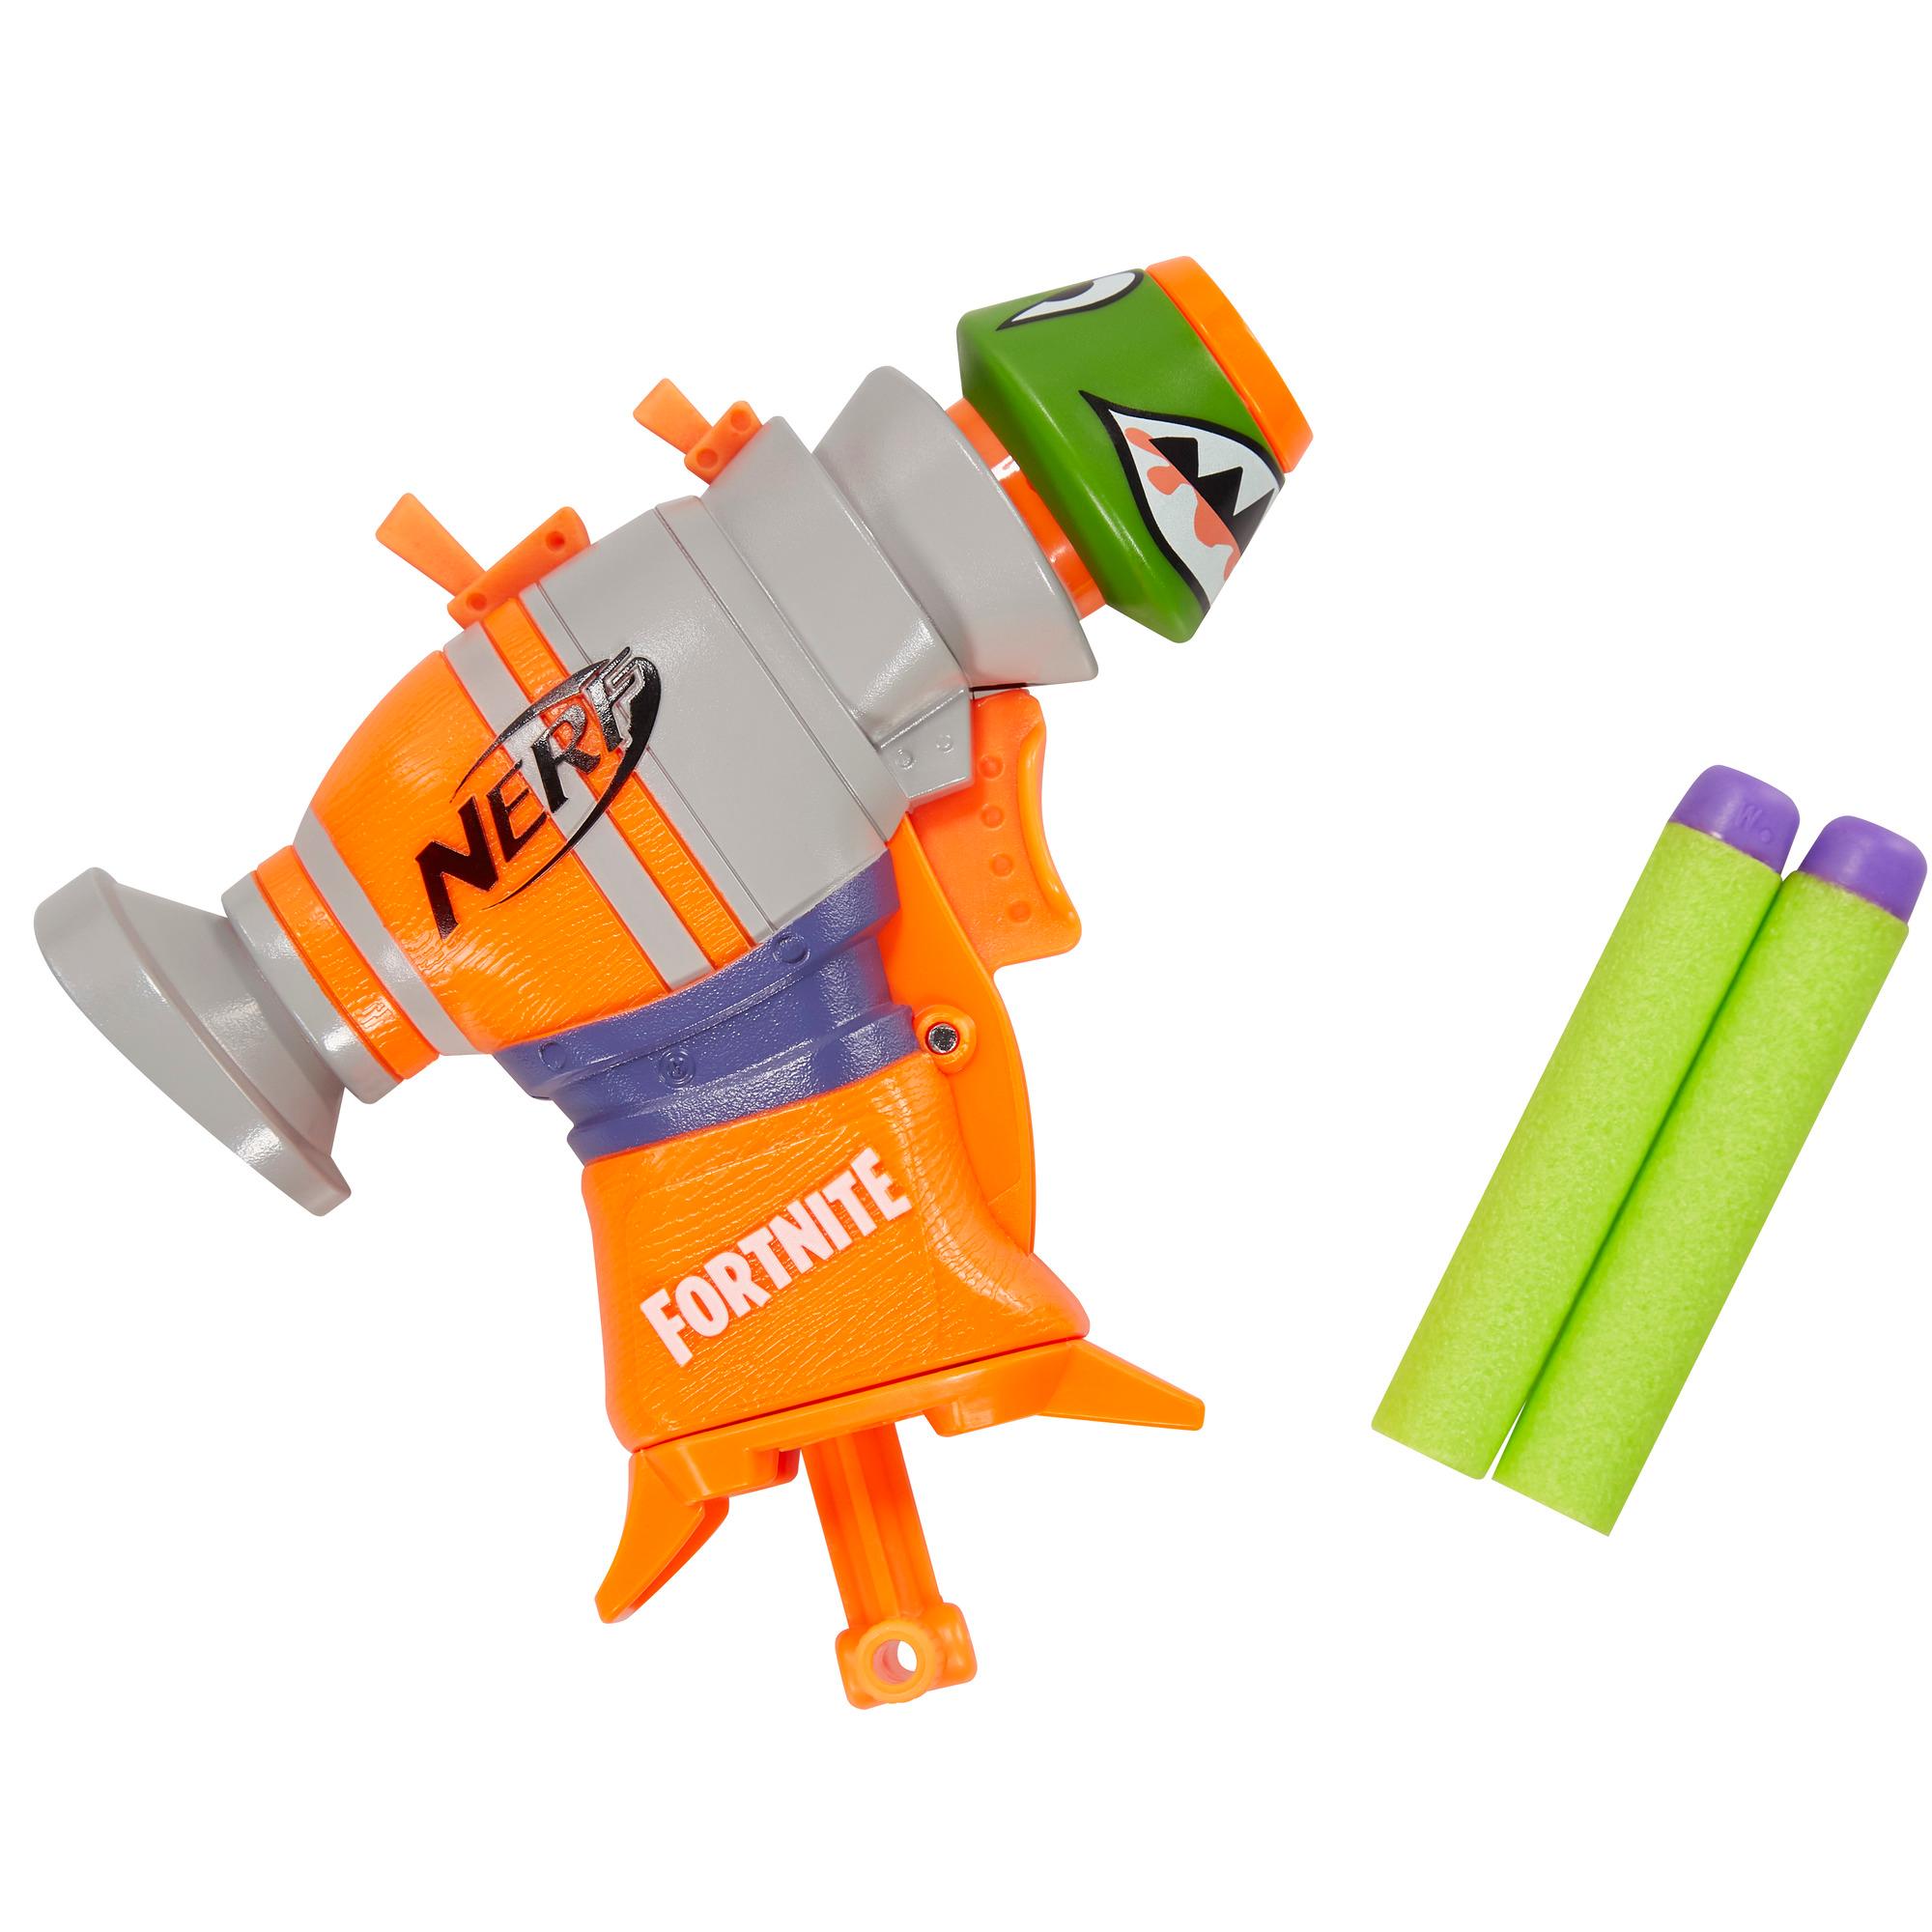 NERF Fortnite RL MicroShots Dart-Firing Toy Blaster